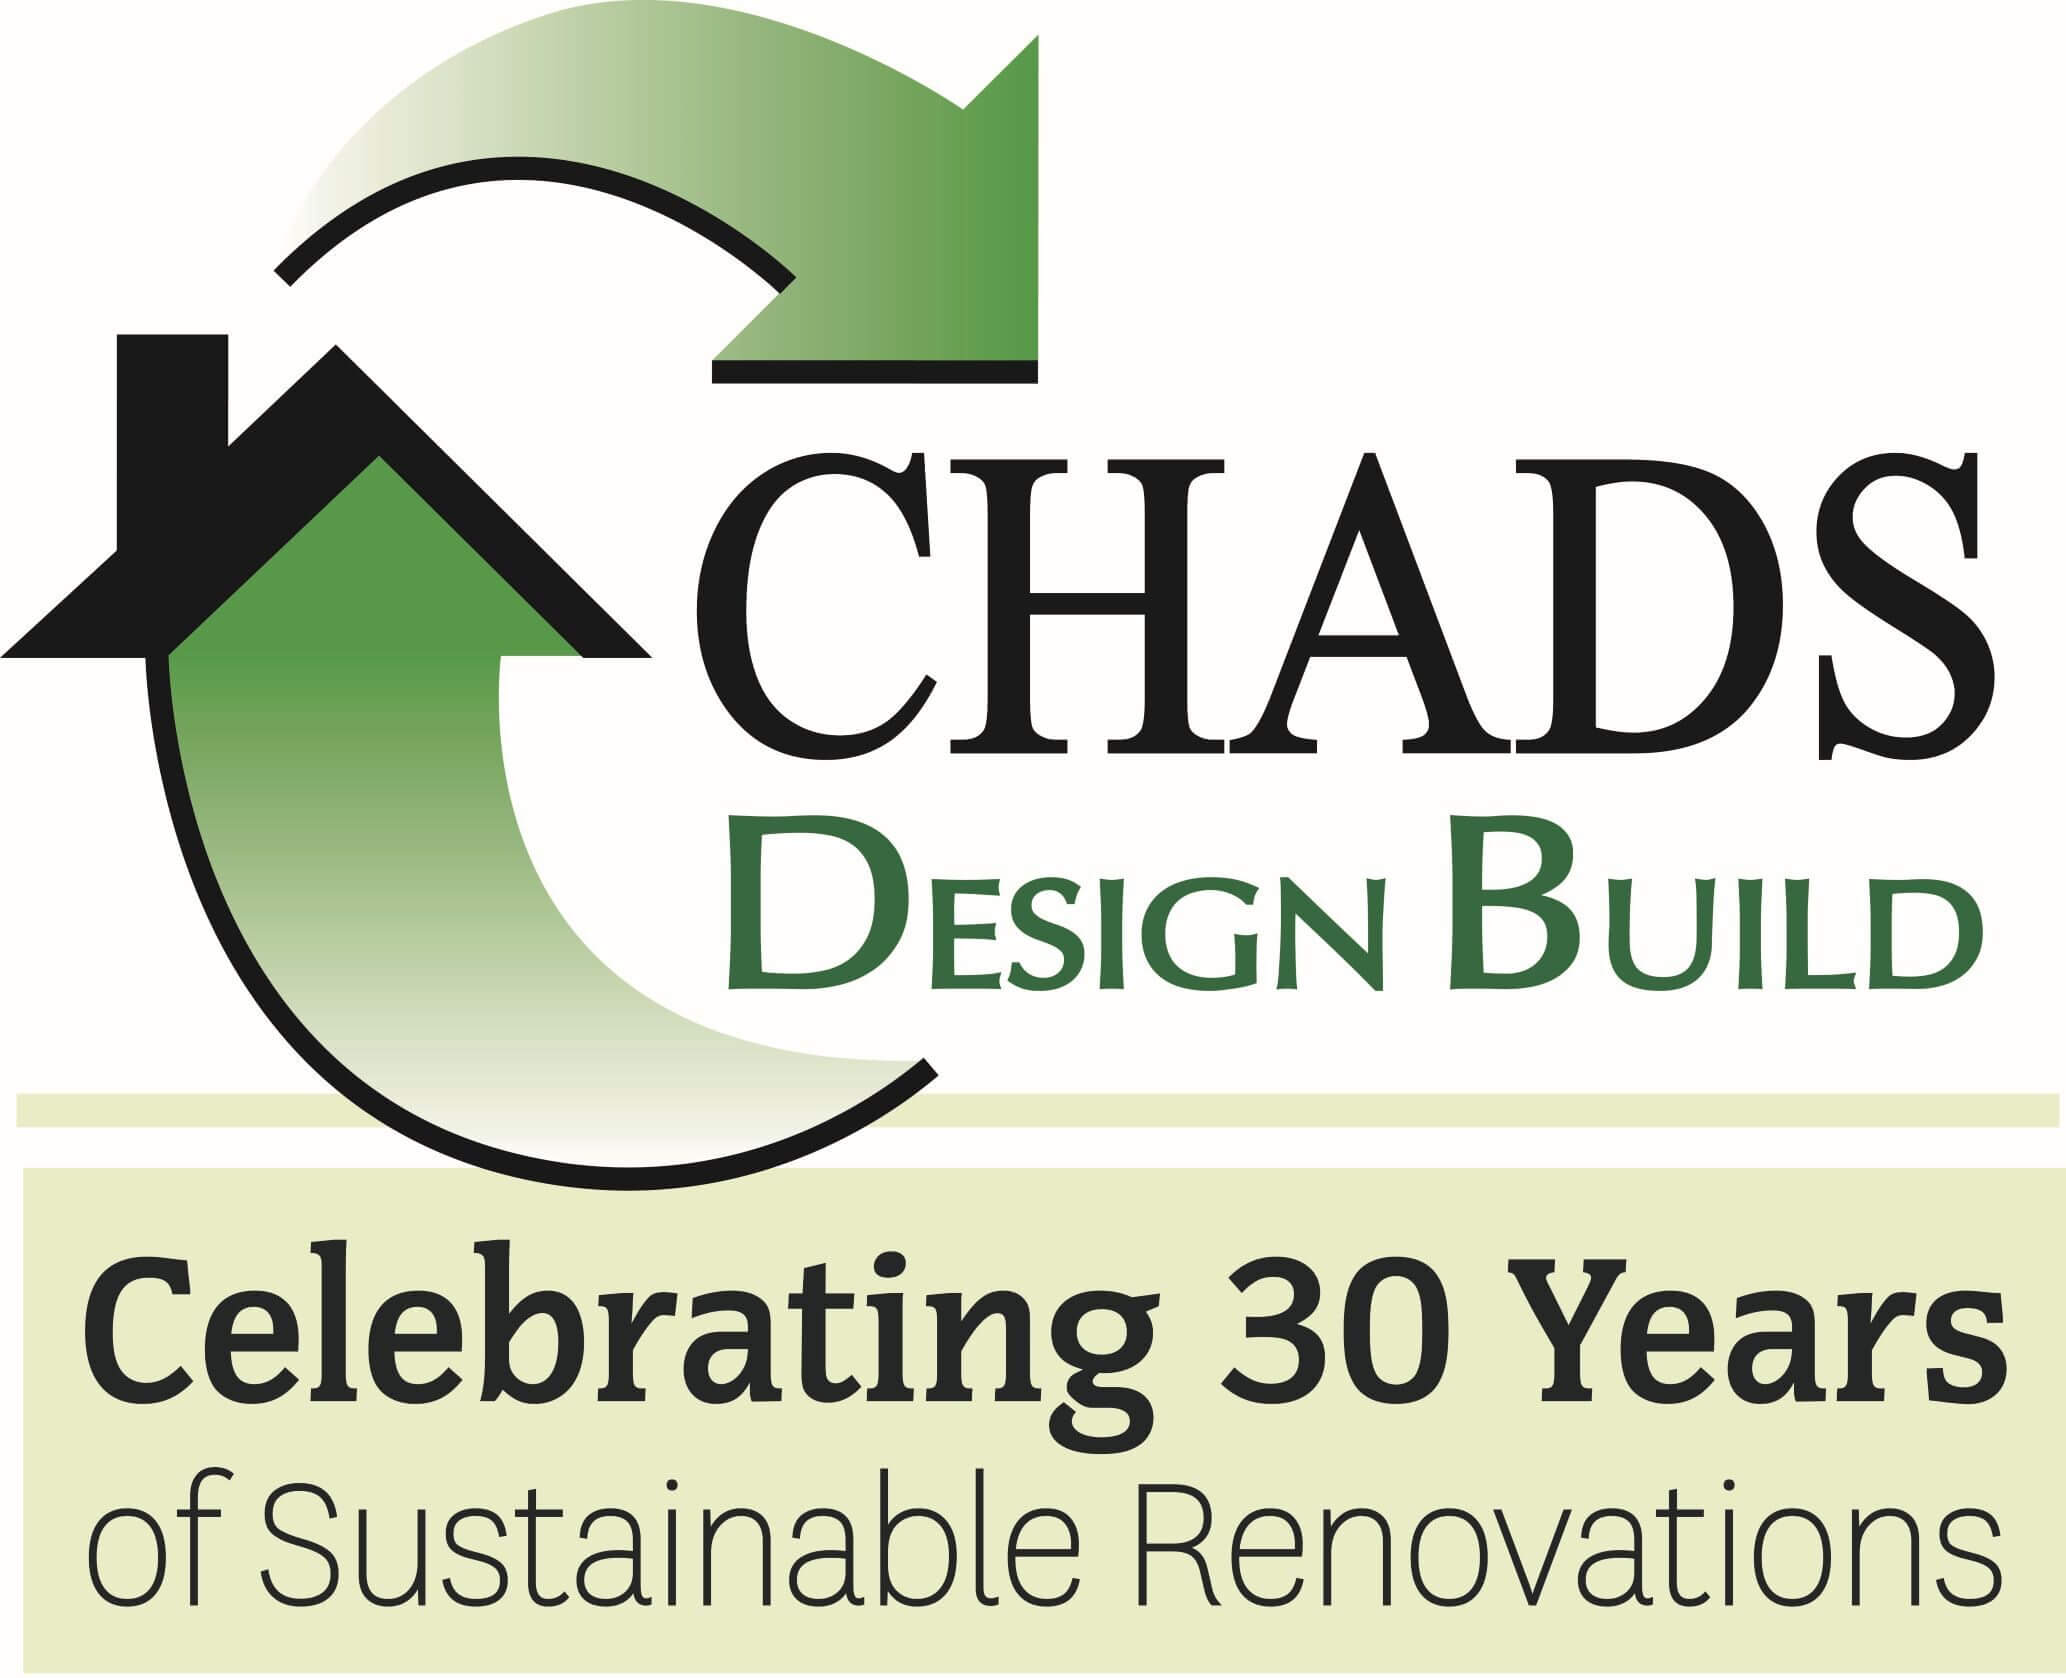 Chads Design Build logo